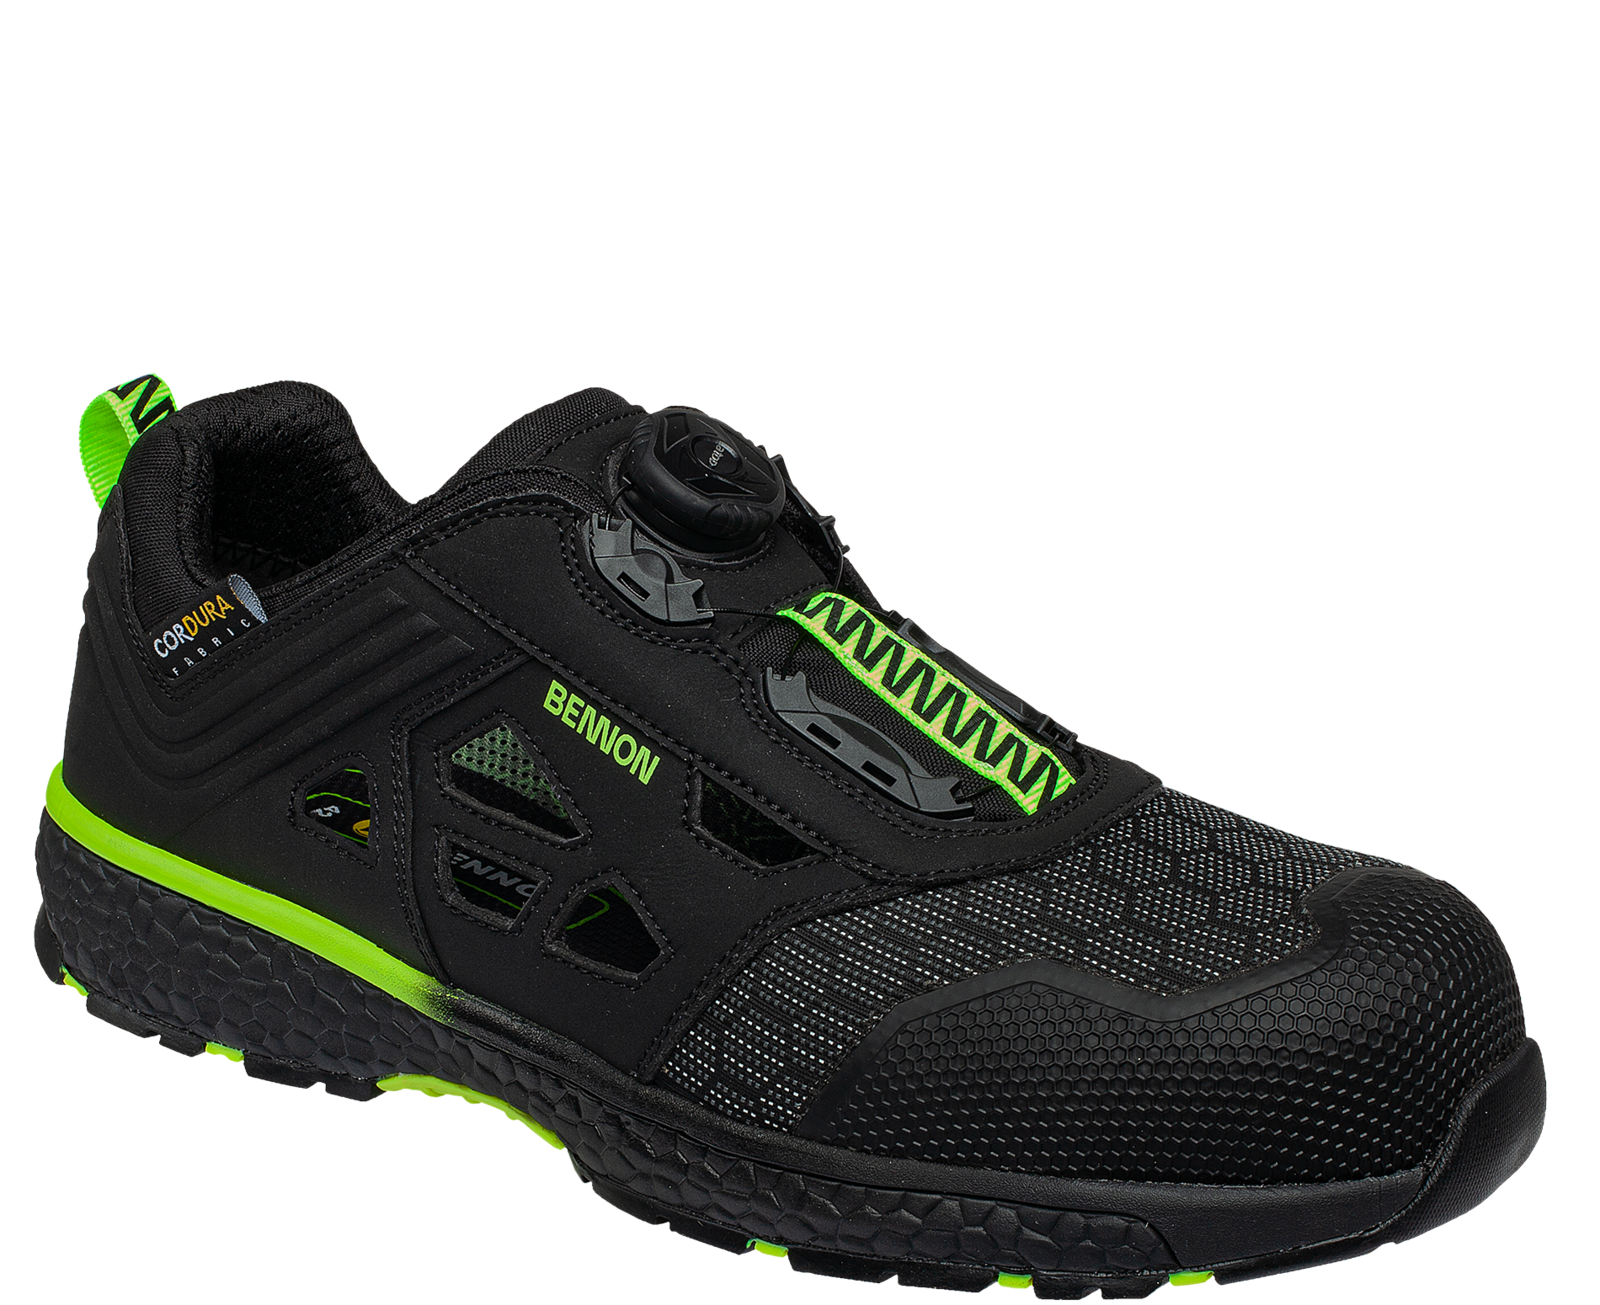 Bezpečnostné sandále Bennon Predator S1P ESD - veľkosť: 46, farba: čierna/zelená